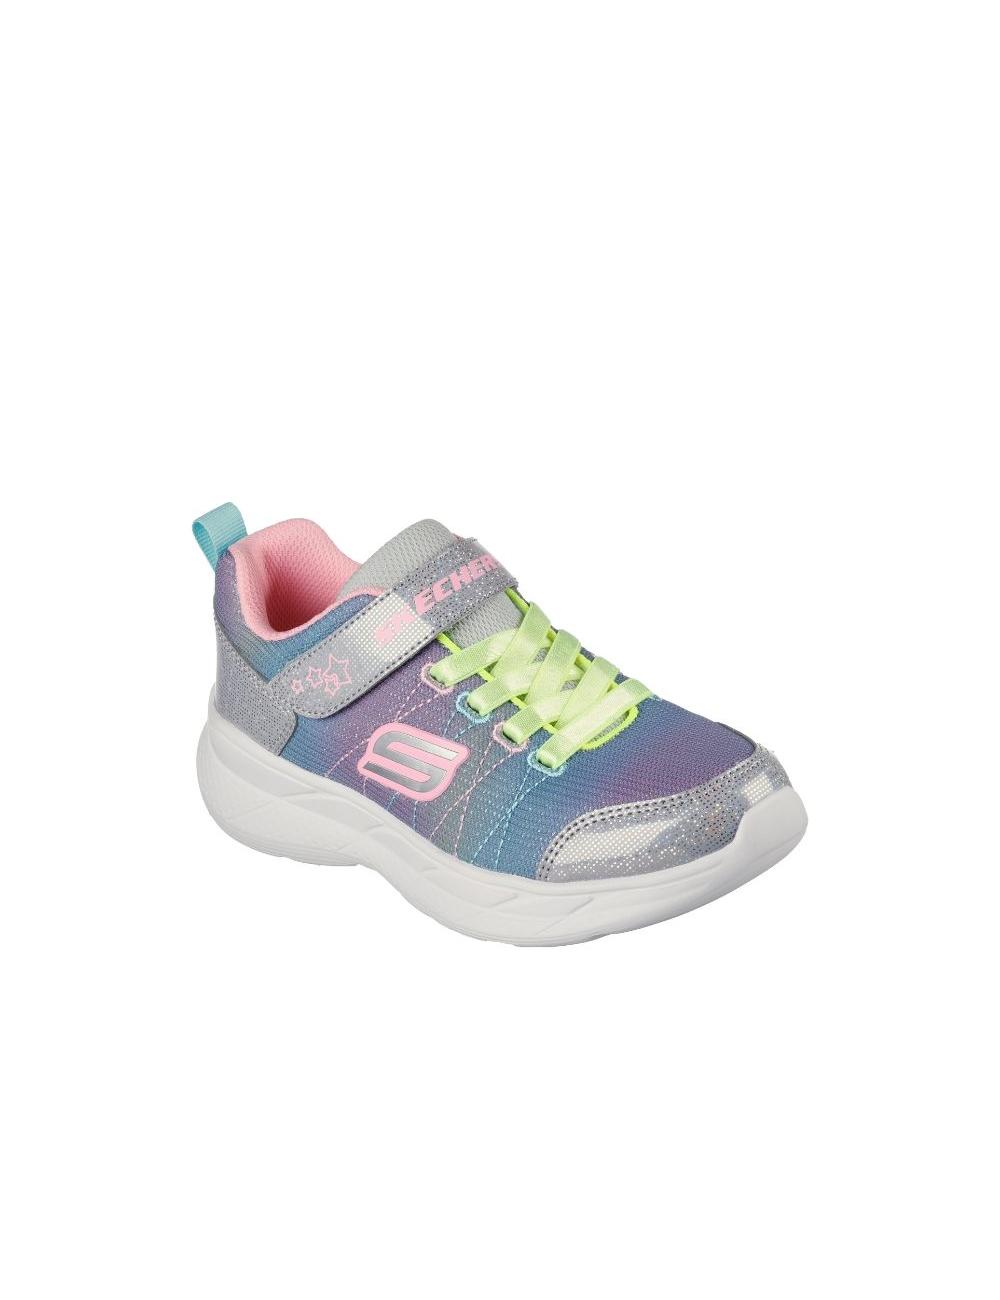 Zapatillas escoolers kids Verona colores Pastel - Comodidad y Moda